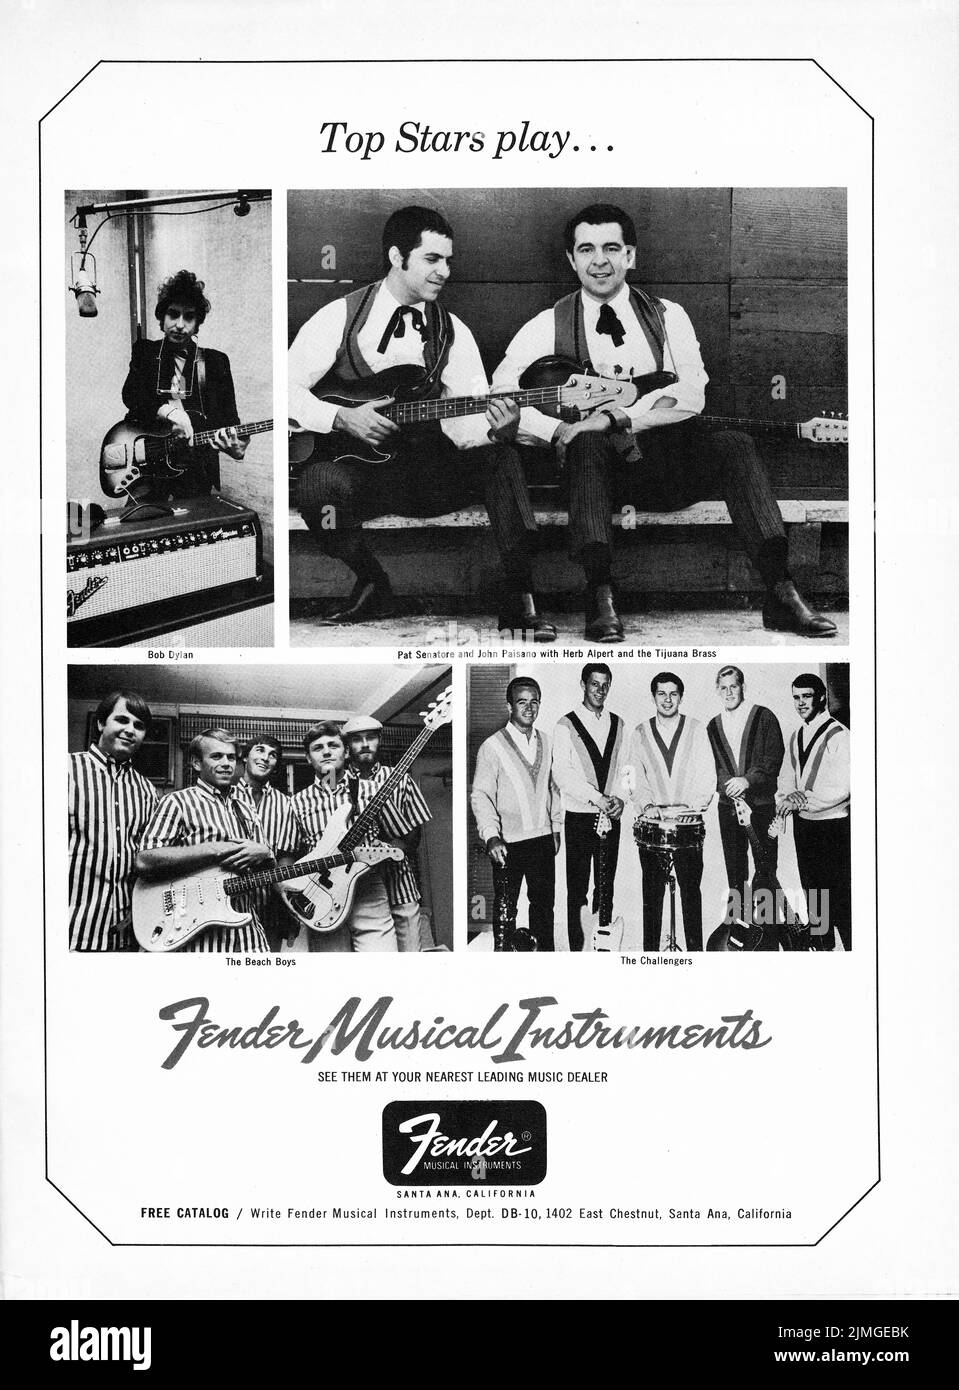 Un anuncio de guitarra Fender de una revista musical de 1962 que muestra que las mejores estrellas tocan instrumentos Fender. El anuncio incluye a Bob Dylan, The Beach Boys, miembros de la banda de Herb Alpert & The Challengers. Foto de stock